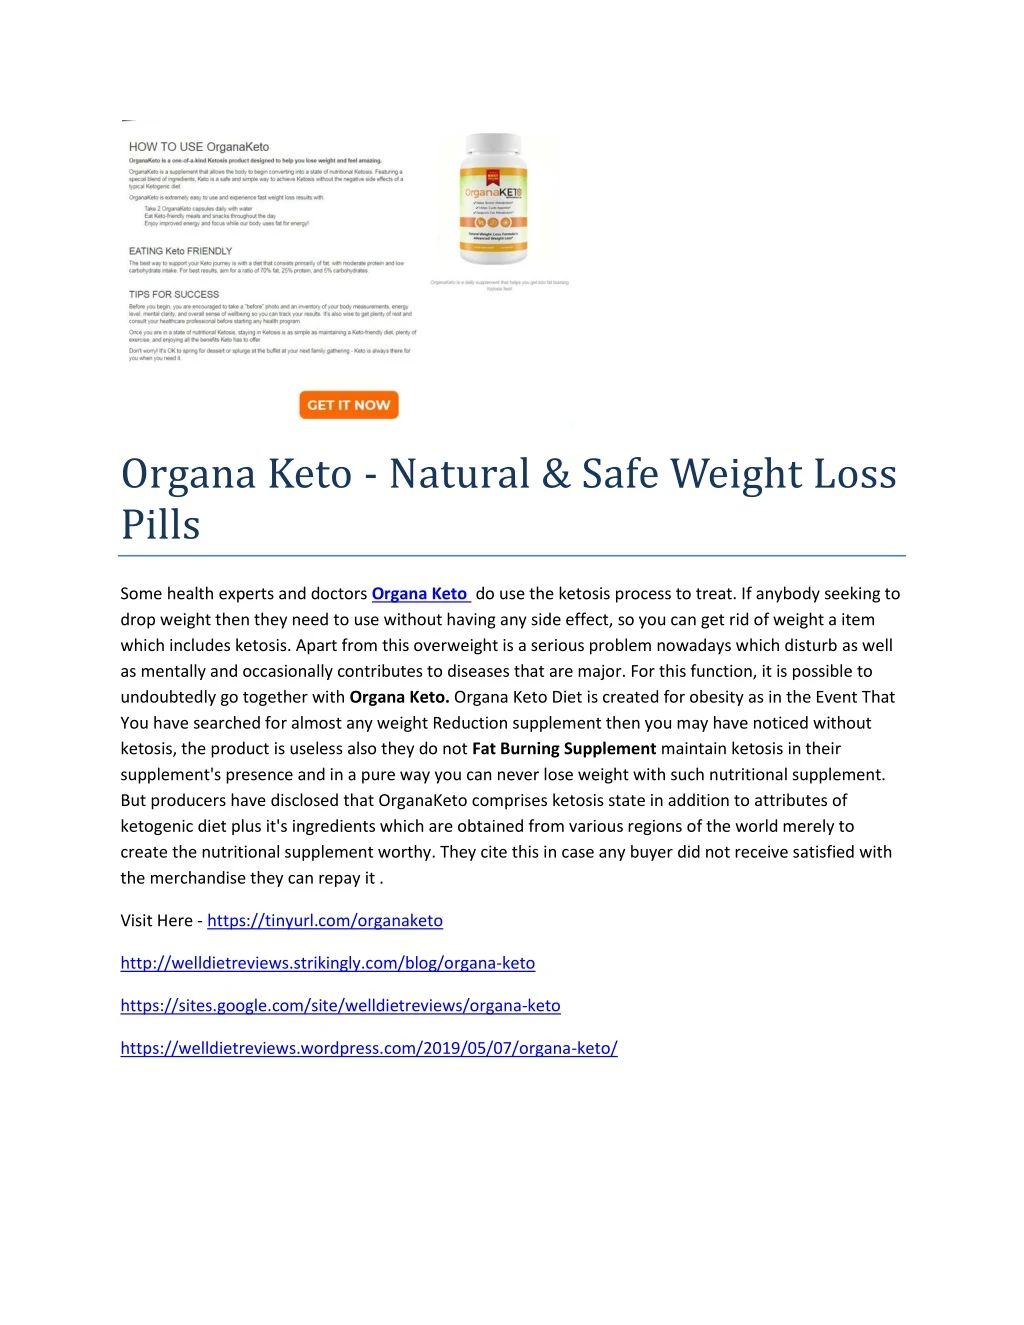 organa keto natural safe weight loss pills